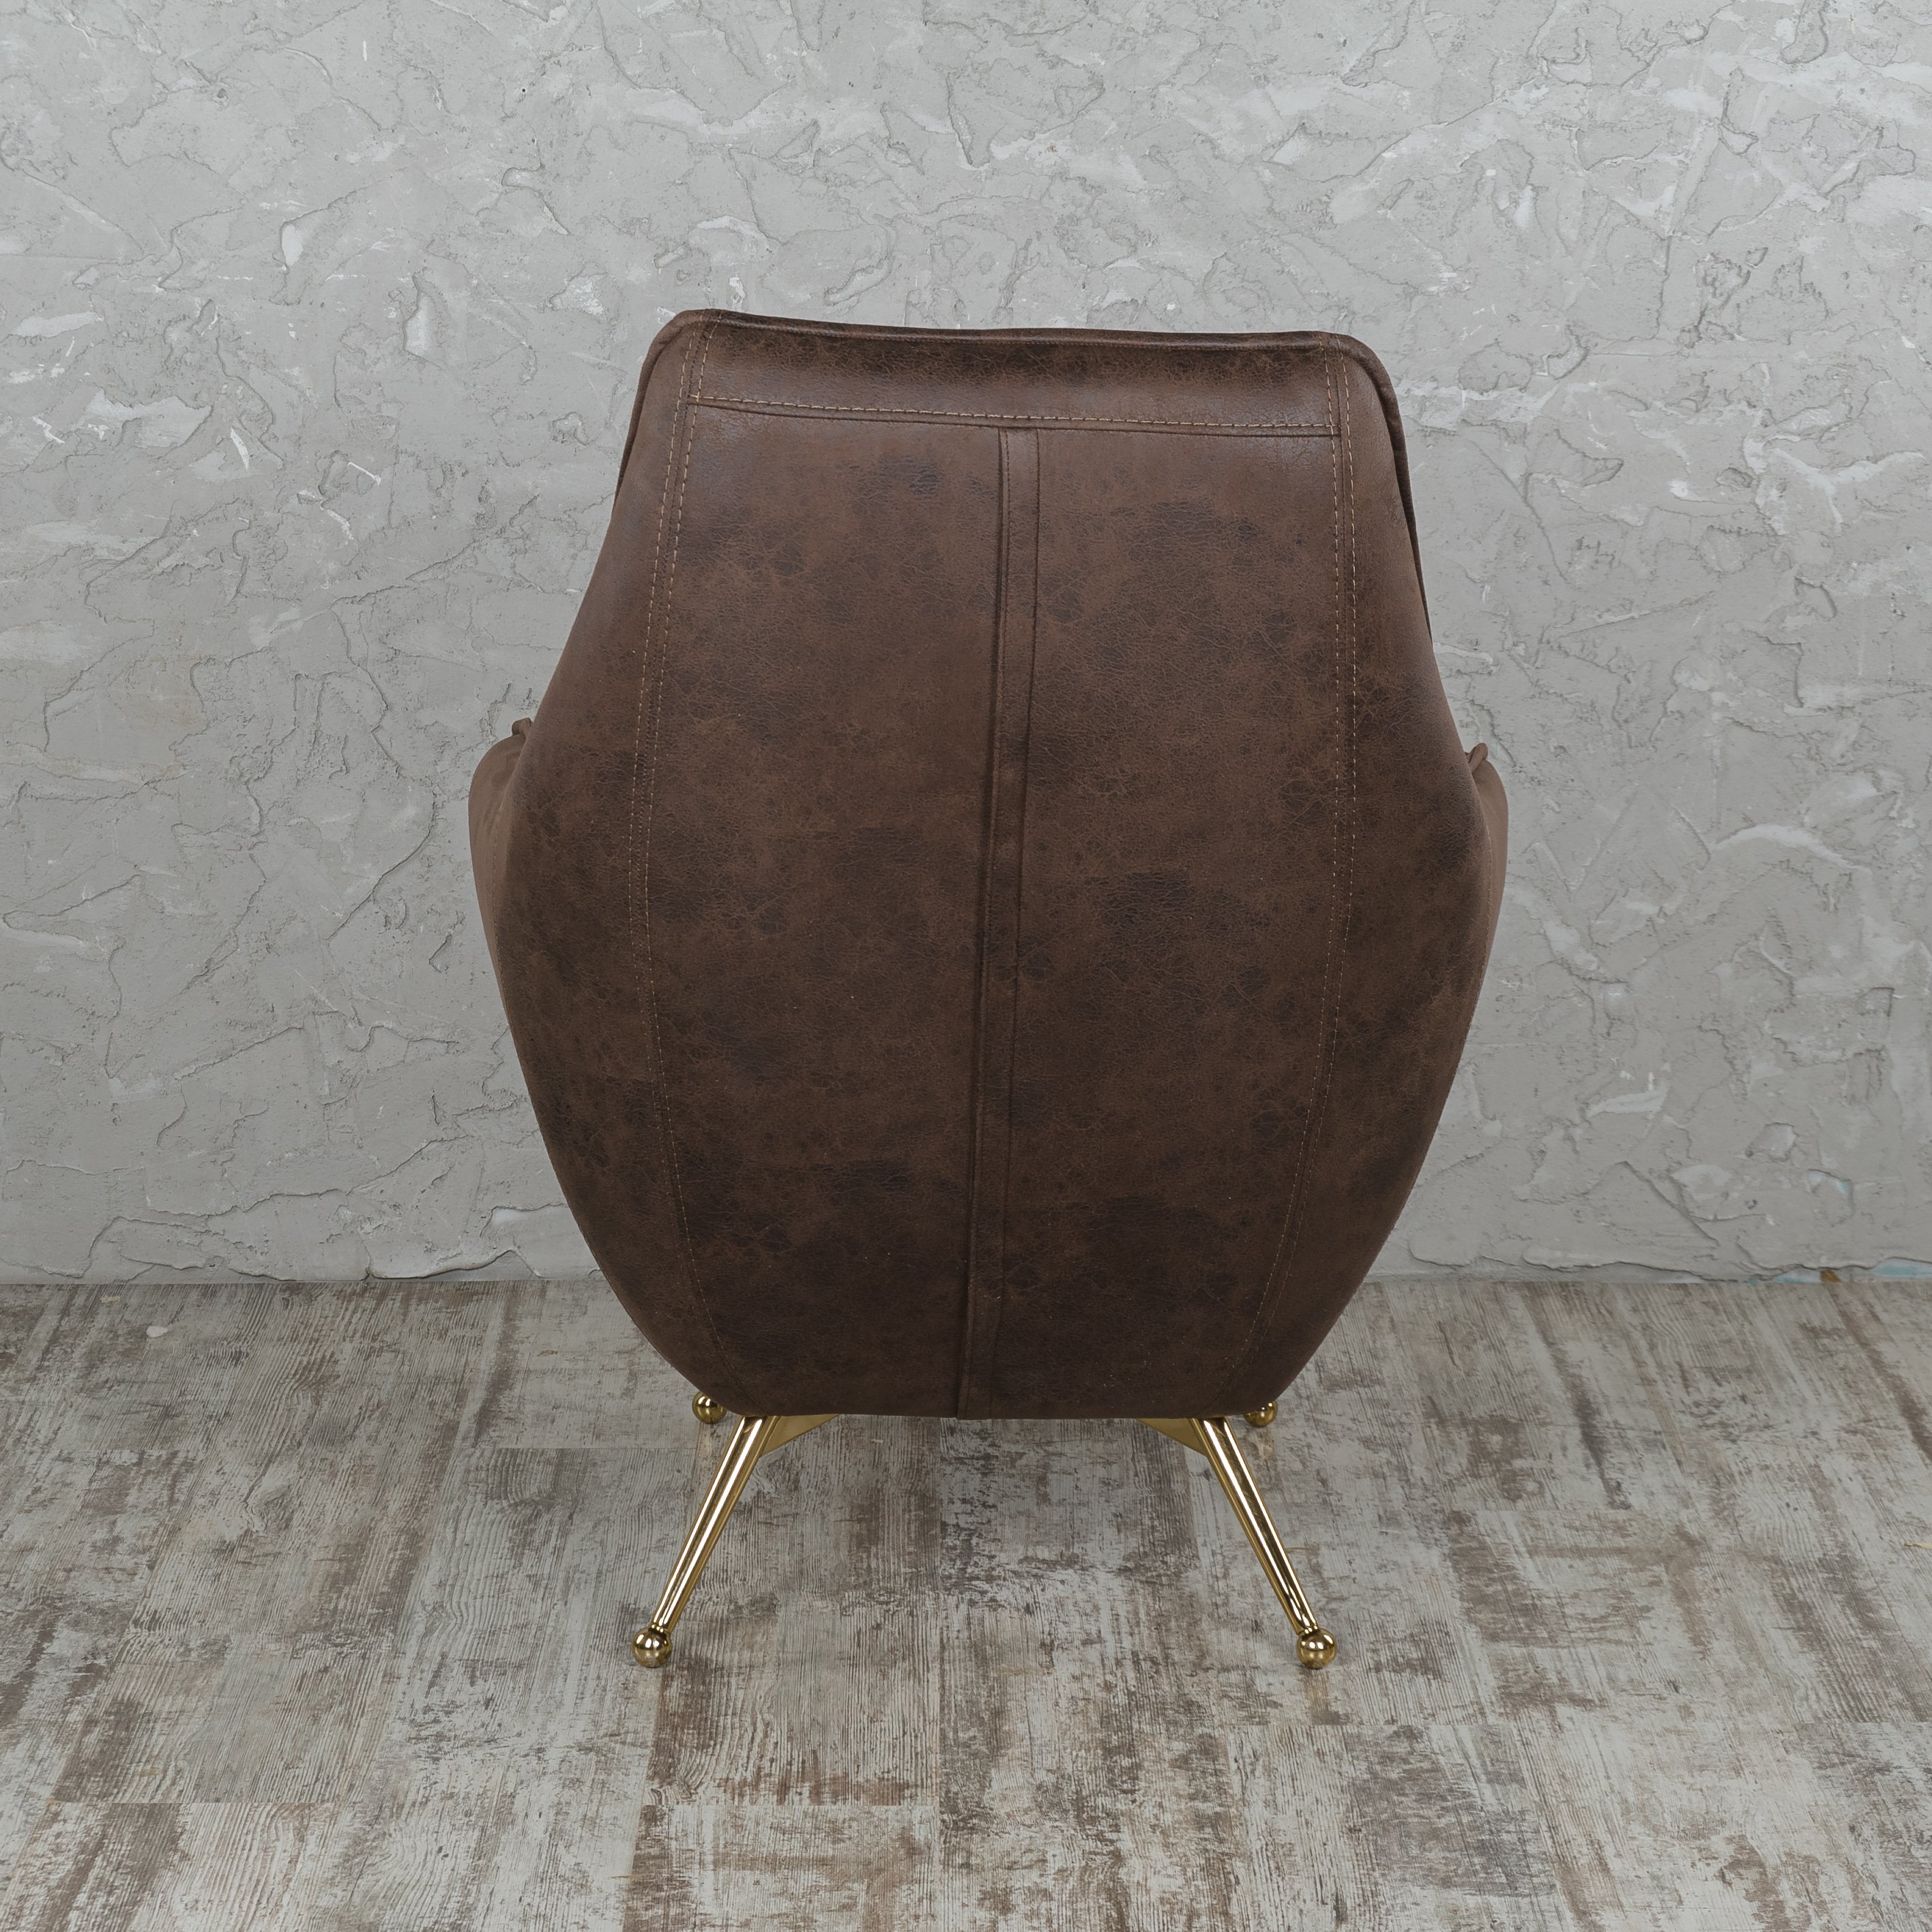 Кресло Lenova Amor, размер 85х80х82, ткань Craft 1007/dark brown (02179)02179